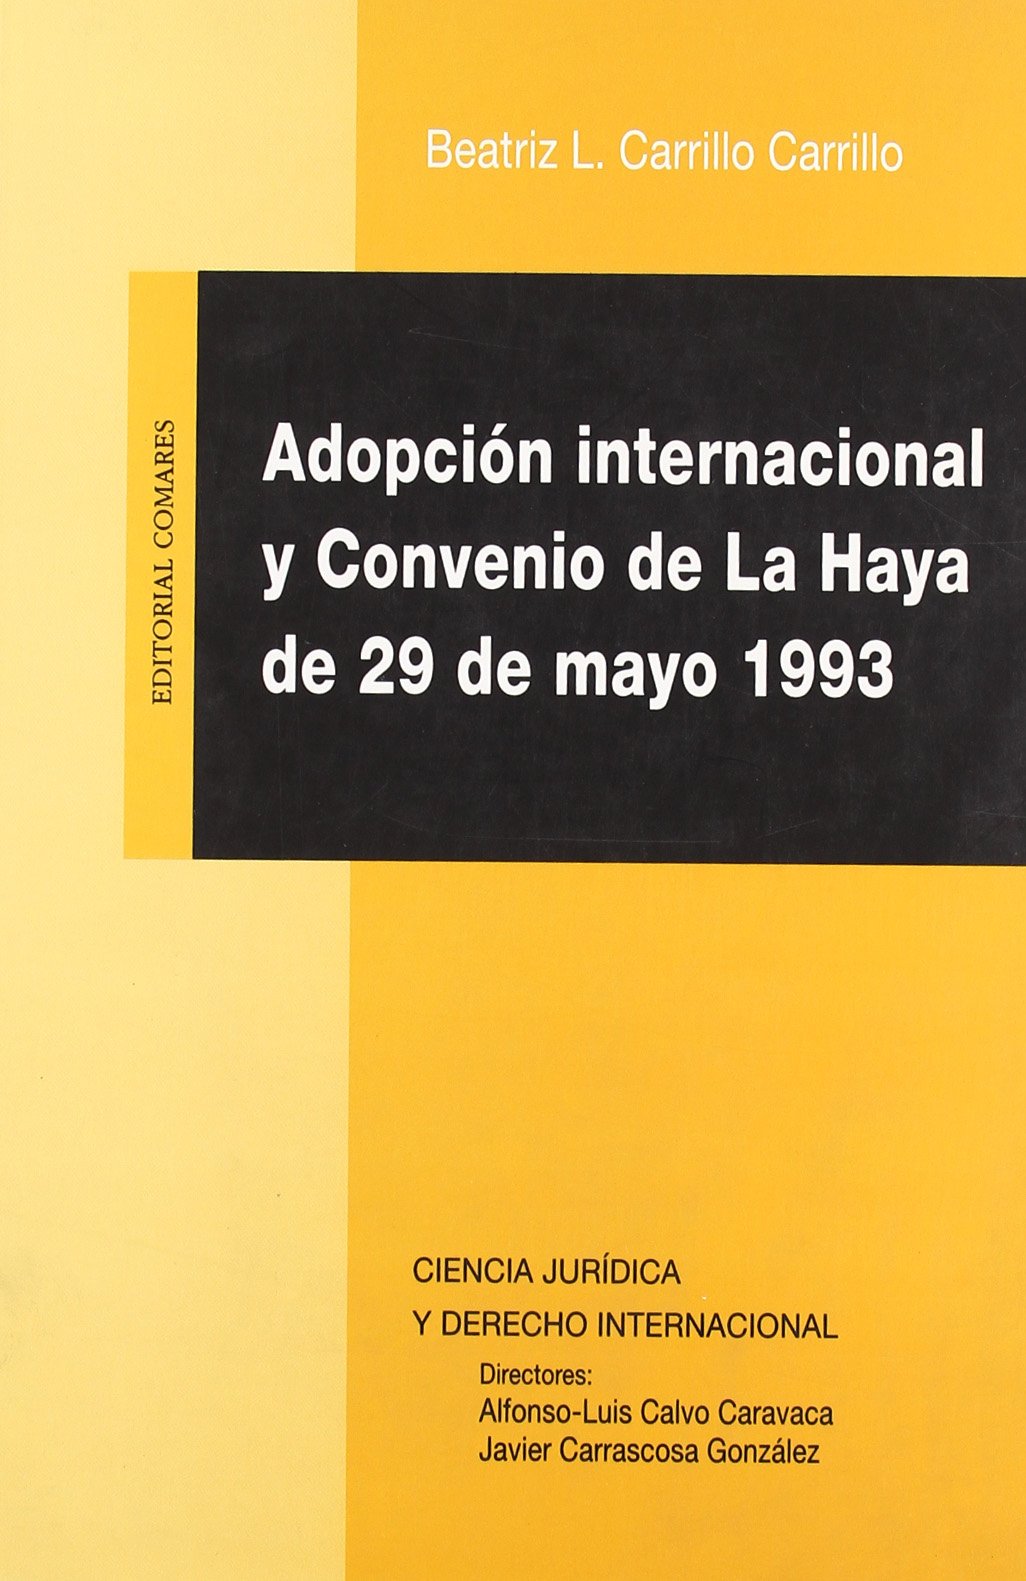 Adopción internacional y Convenio de La Haya de 29 de mayo de 1993